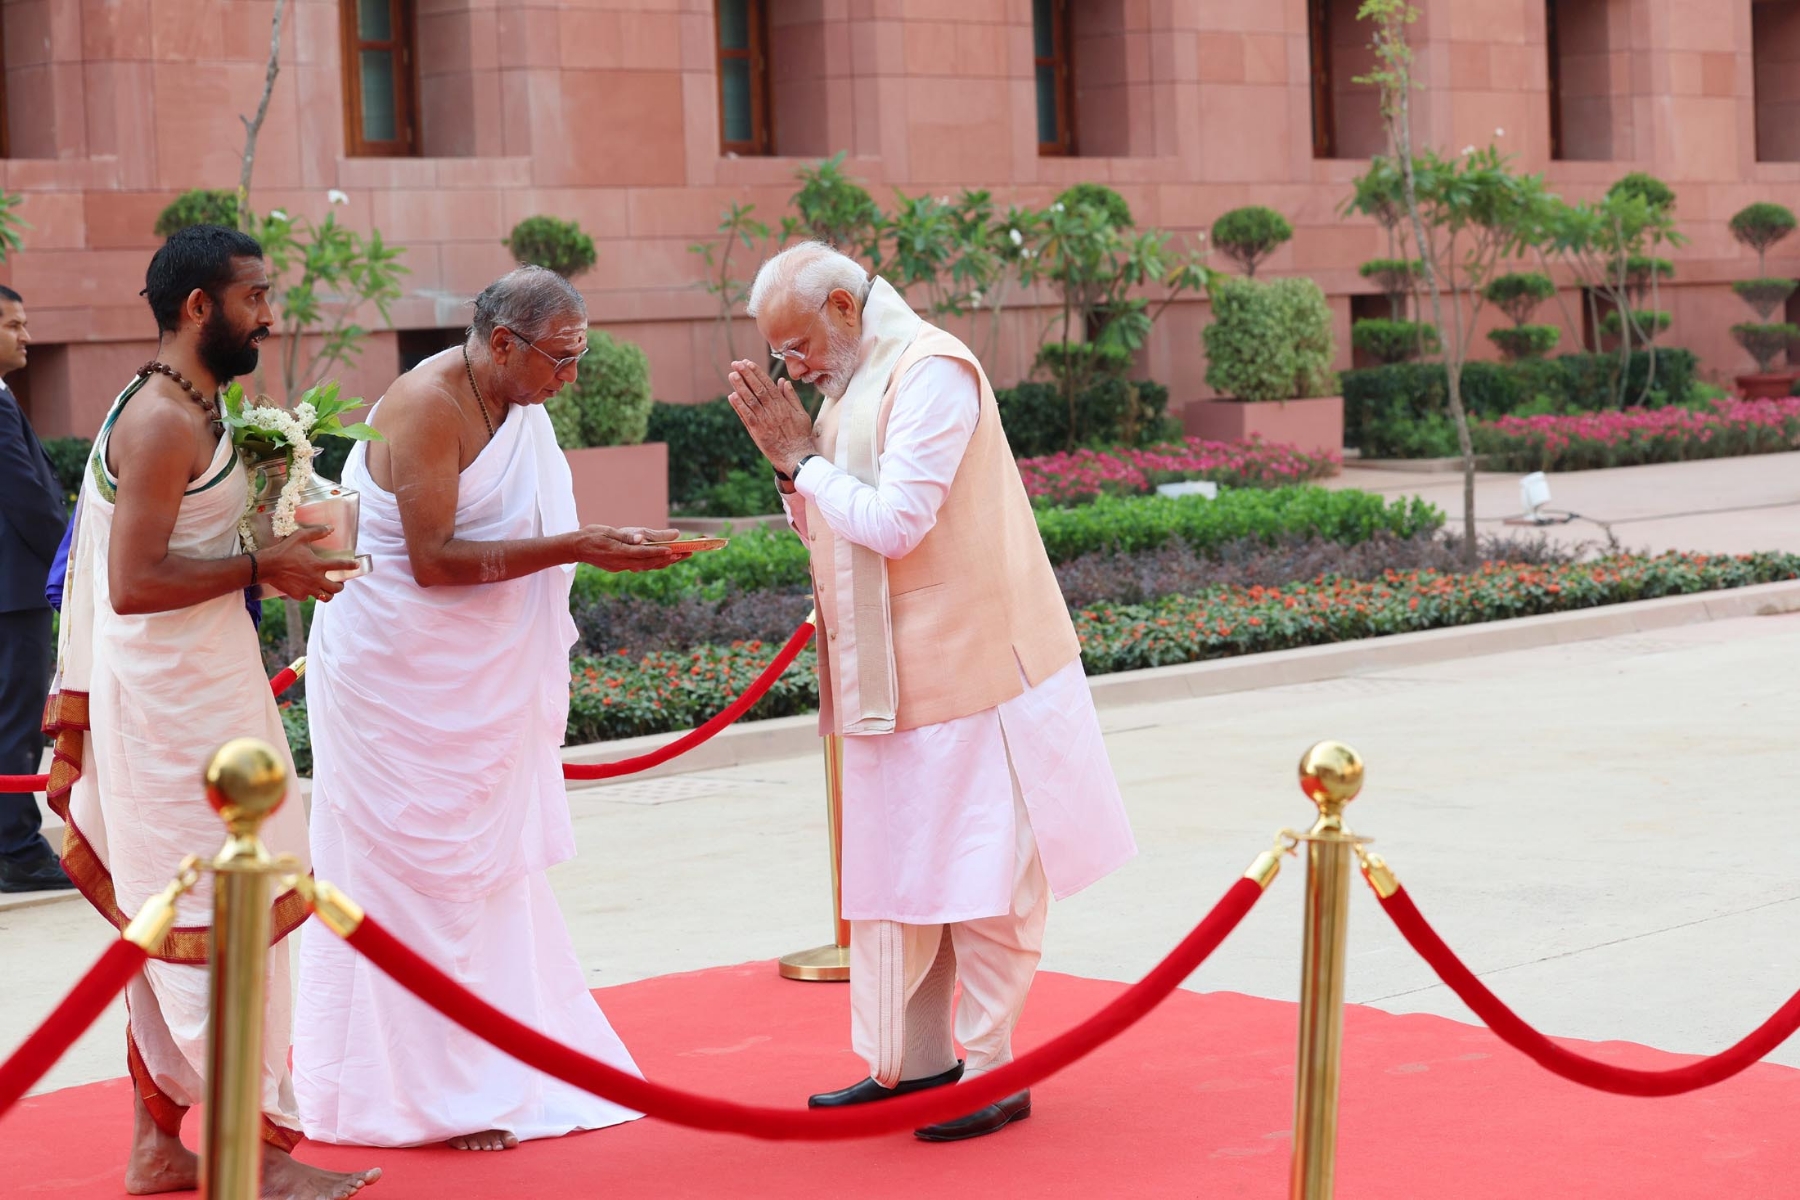 प्रधानमंत्री नरेन्द्र मोदी ने नए संसद भवन के उद्घाटन के अवसर पर तमिलनाडु के अधीनम संतों ने प्रधानमंत्री को सौंपा सेंगोल कर पूरे विधि-विधान के साथ अनुष्ठान किया। हिन्दुस्थान समाचार/ गणेश बिष्ट